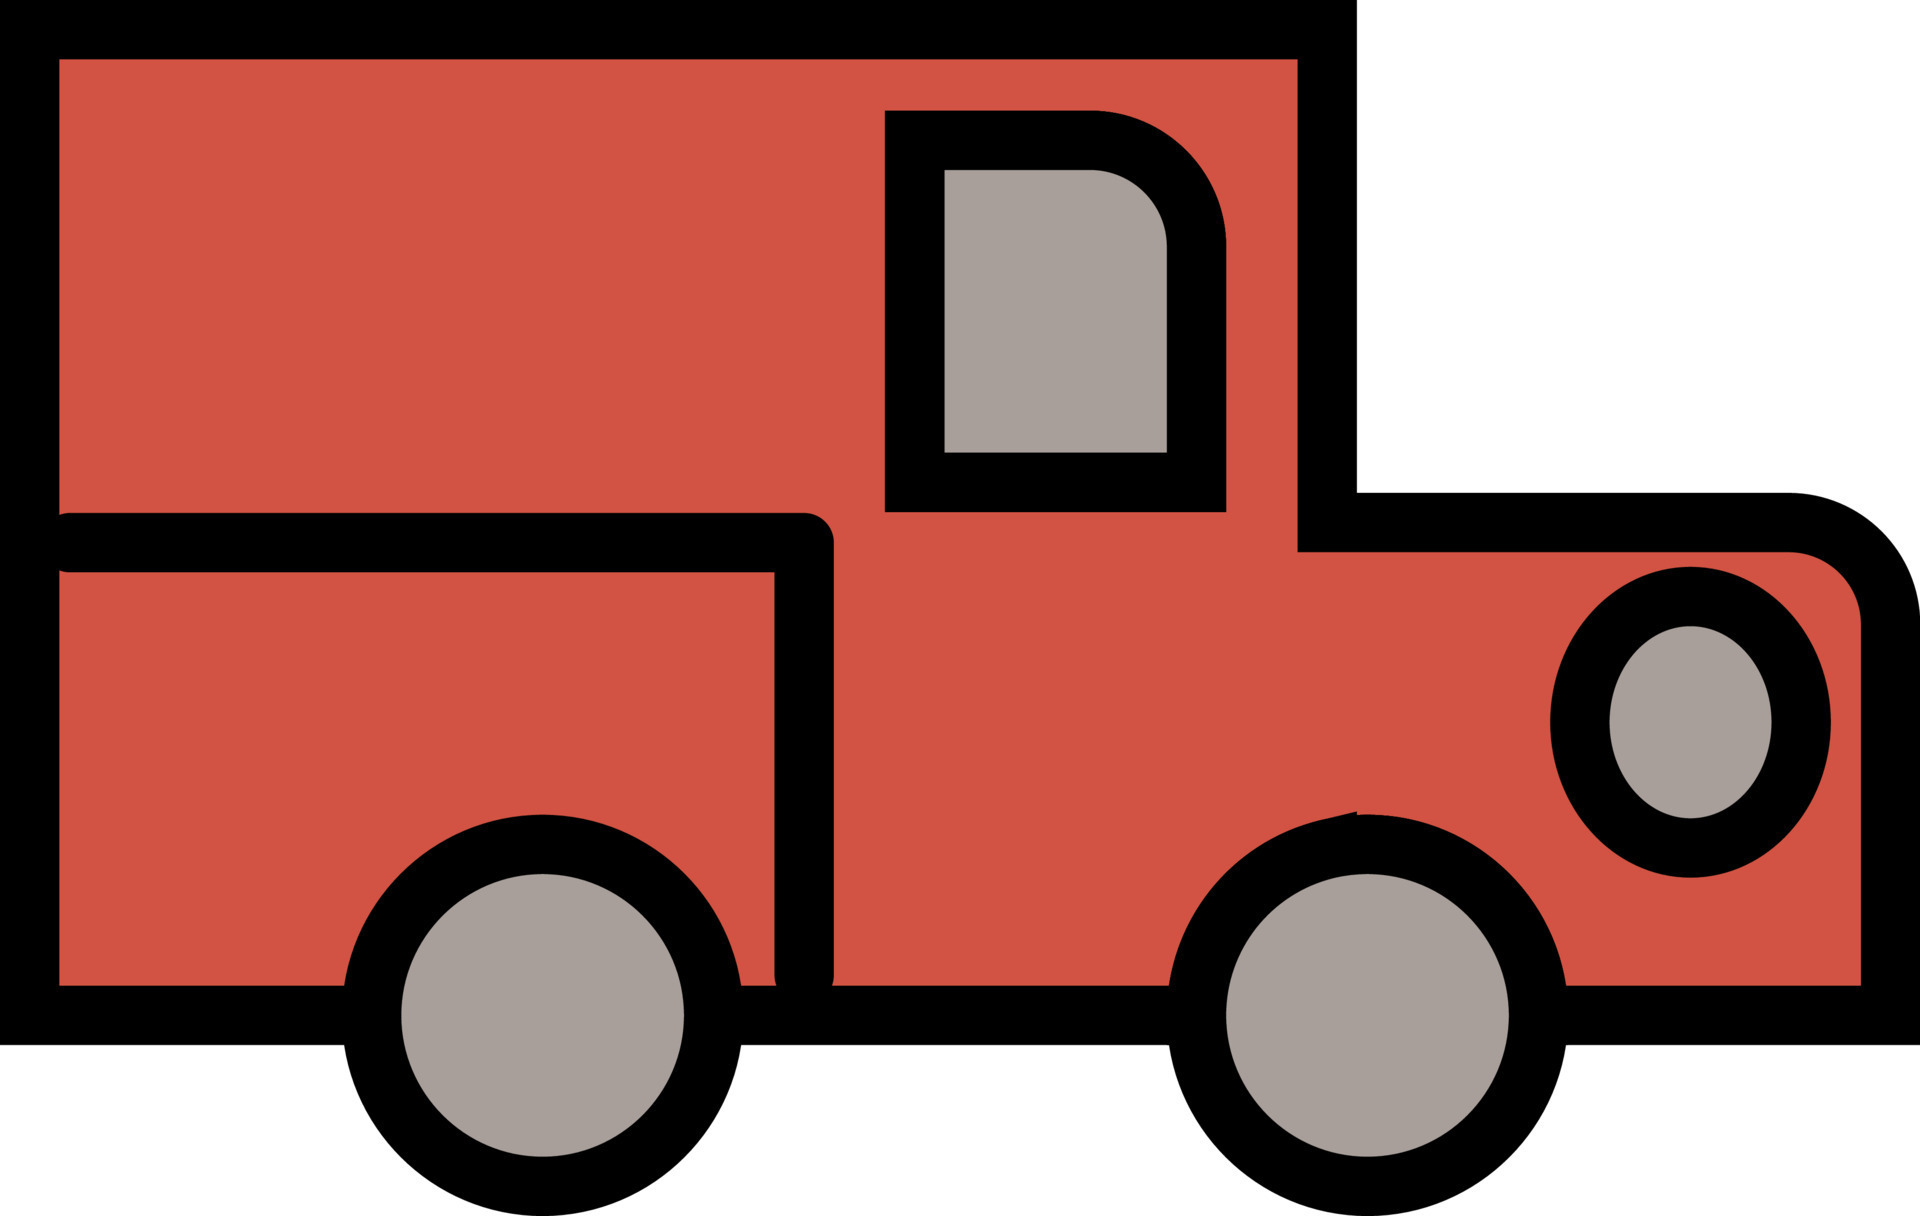 camion de pompier rouge camion de pompiers dessin illustration de dessin  animé 2144009 Art vectoriel chez Vecteezy